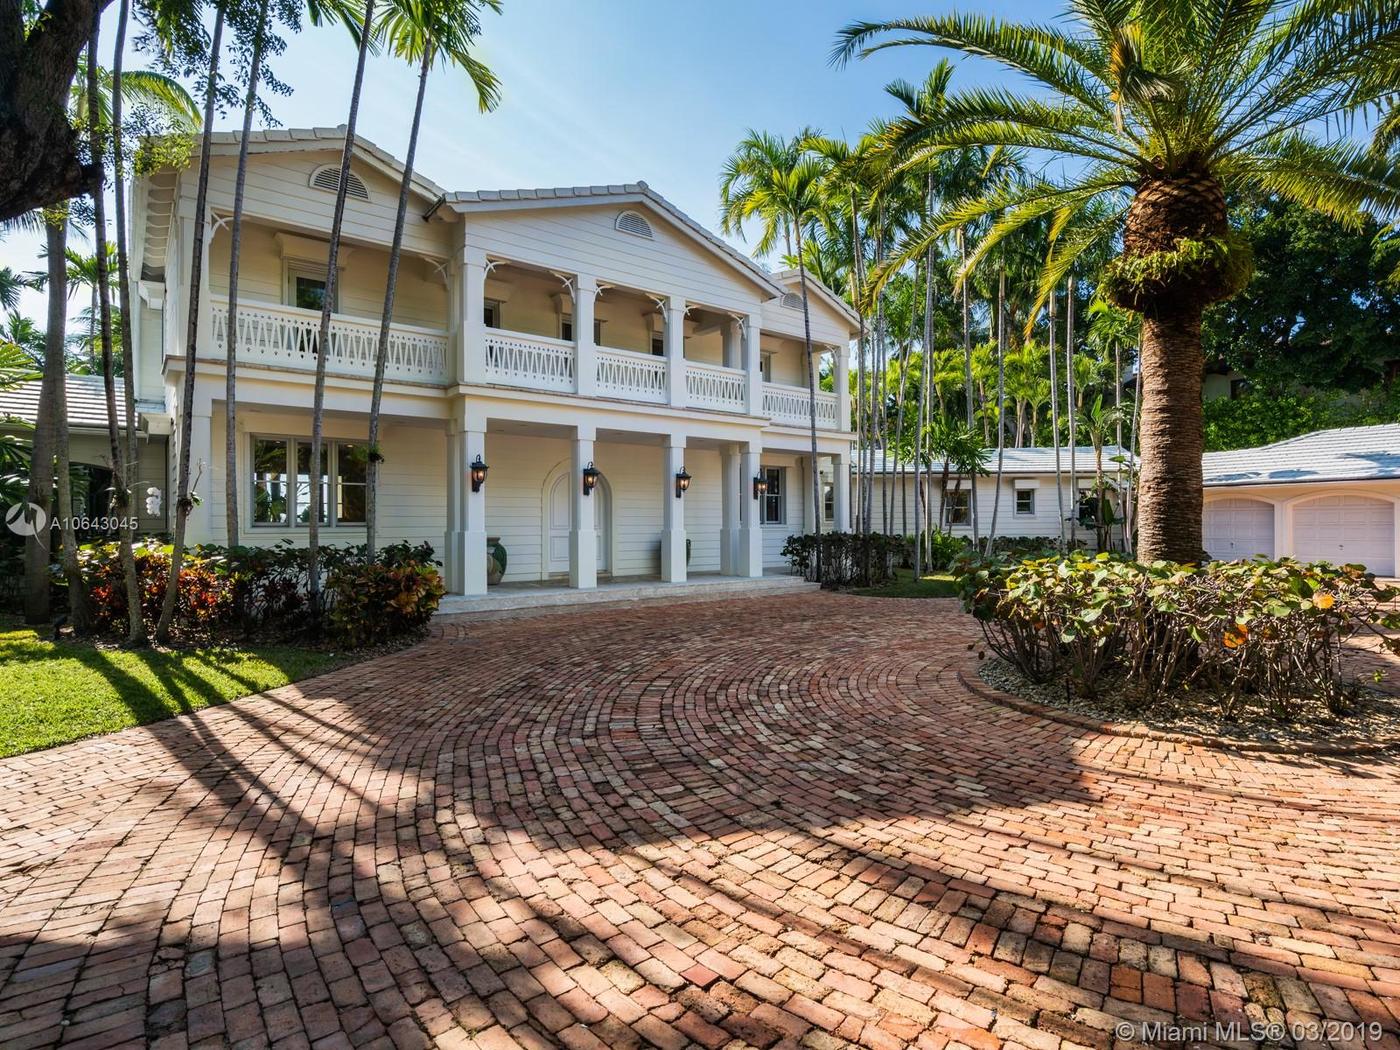 imagen 4 de Gloria y Emilio Estefan venden su espectacular casa en Miami.